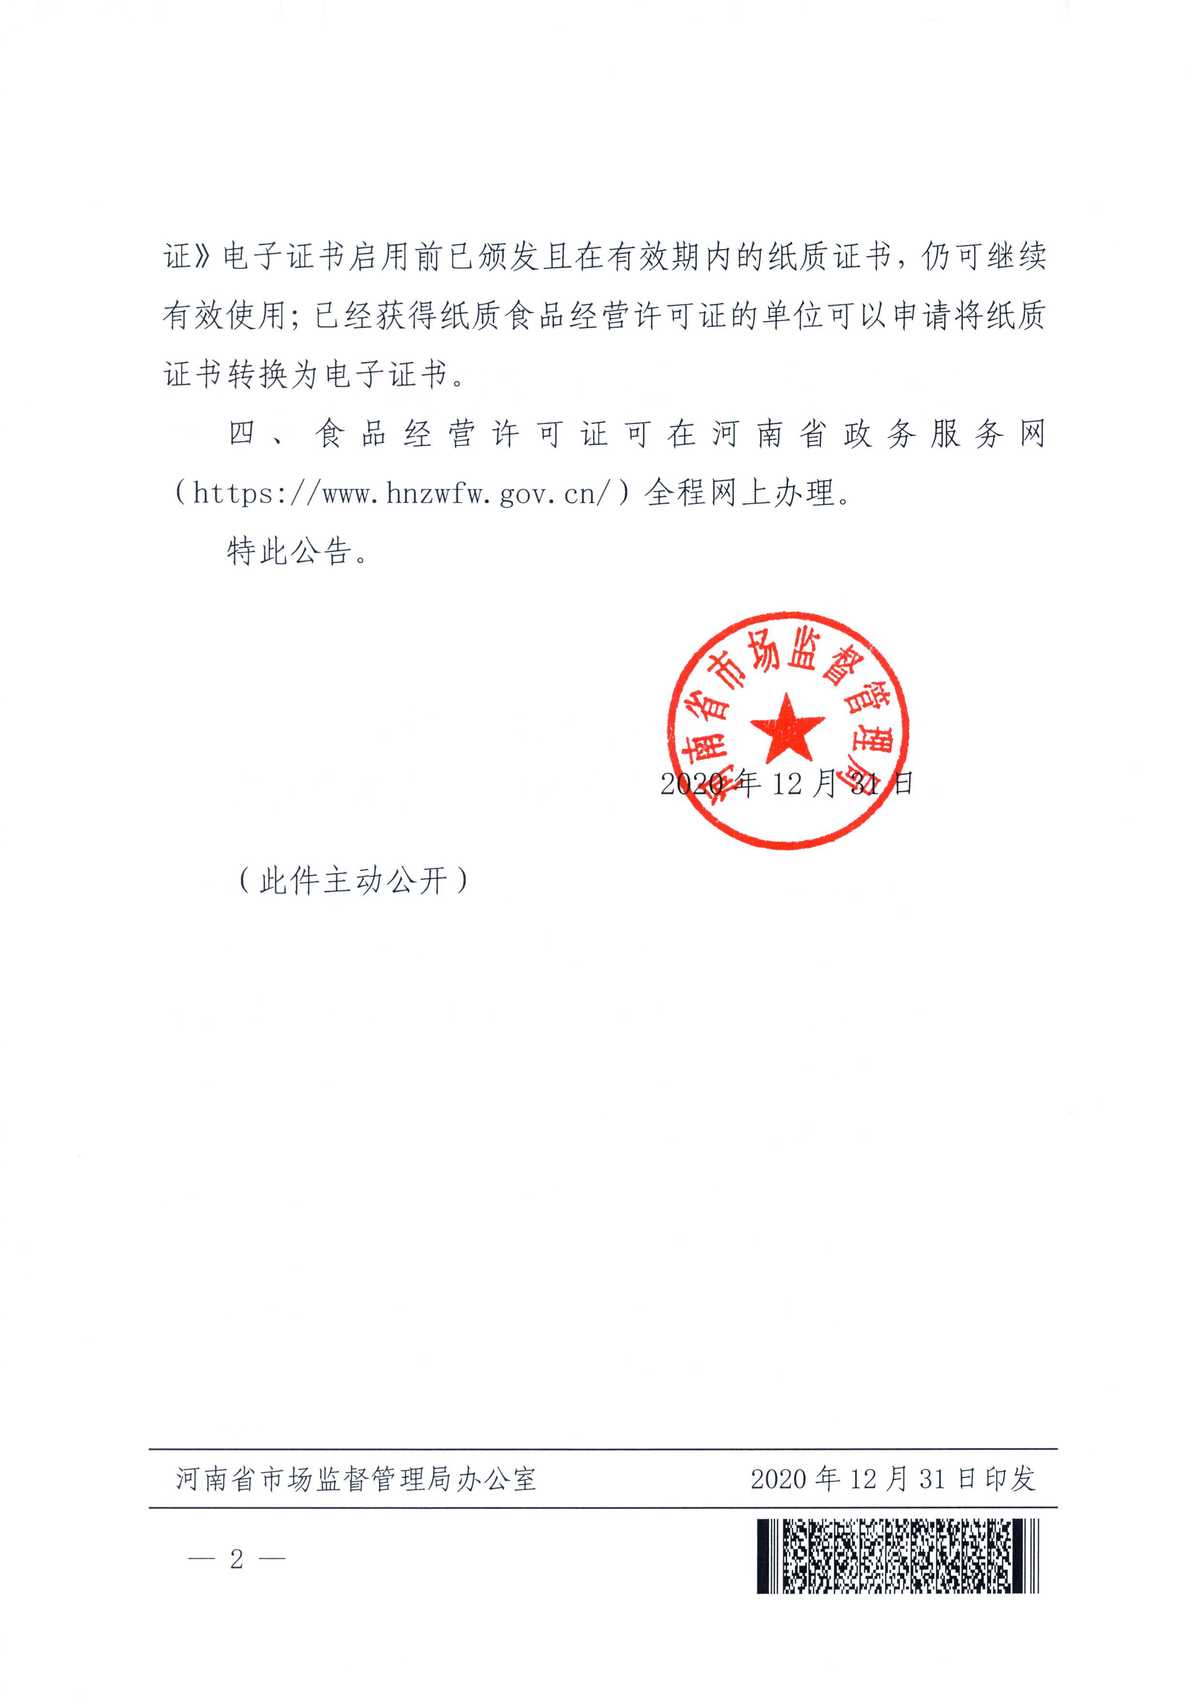 河南省市场监督管理局关于启用食品经营许可电子证书的公告